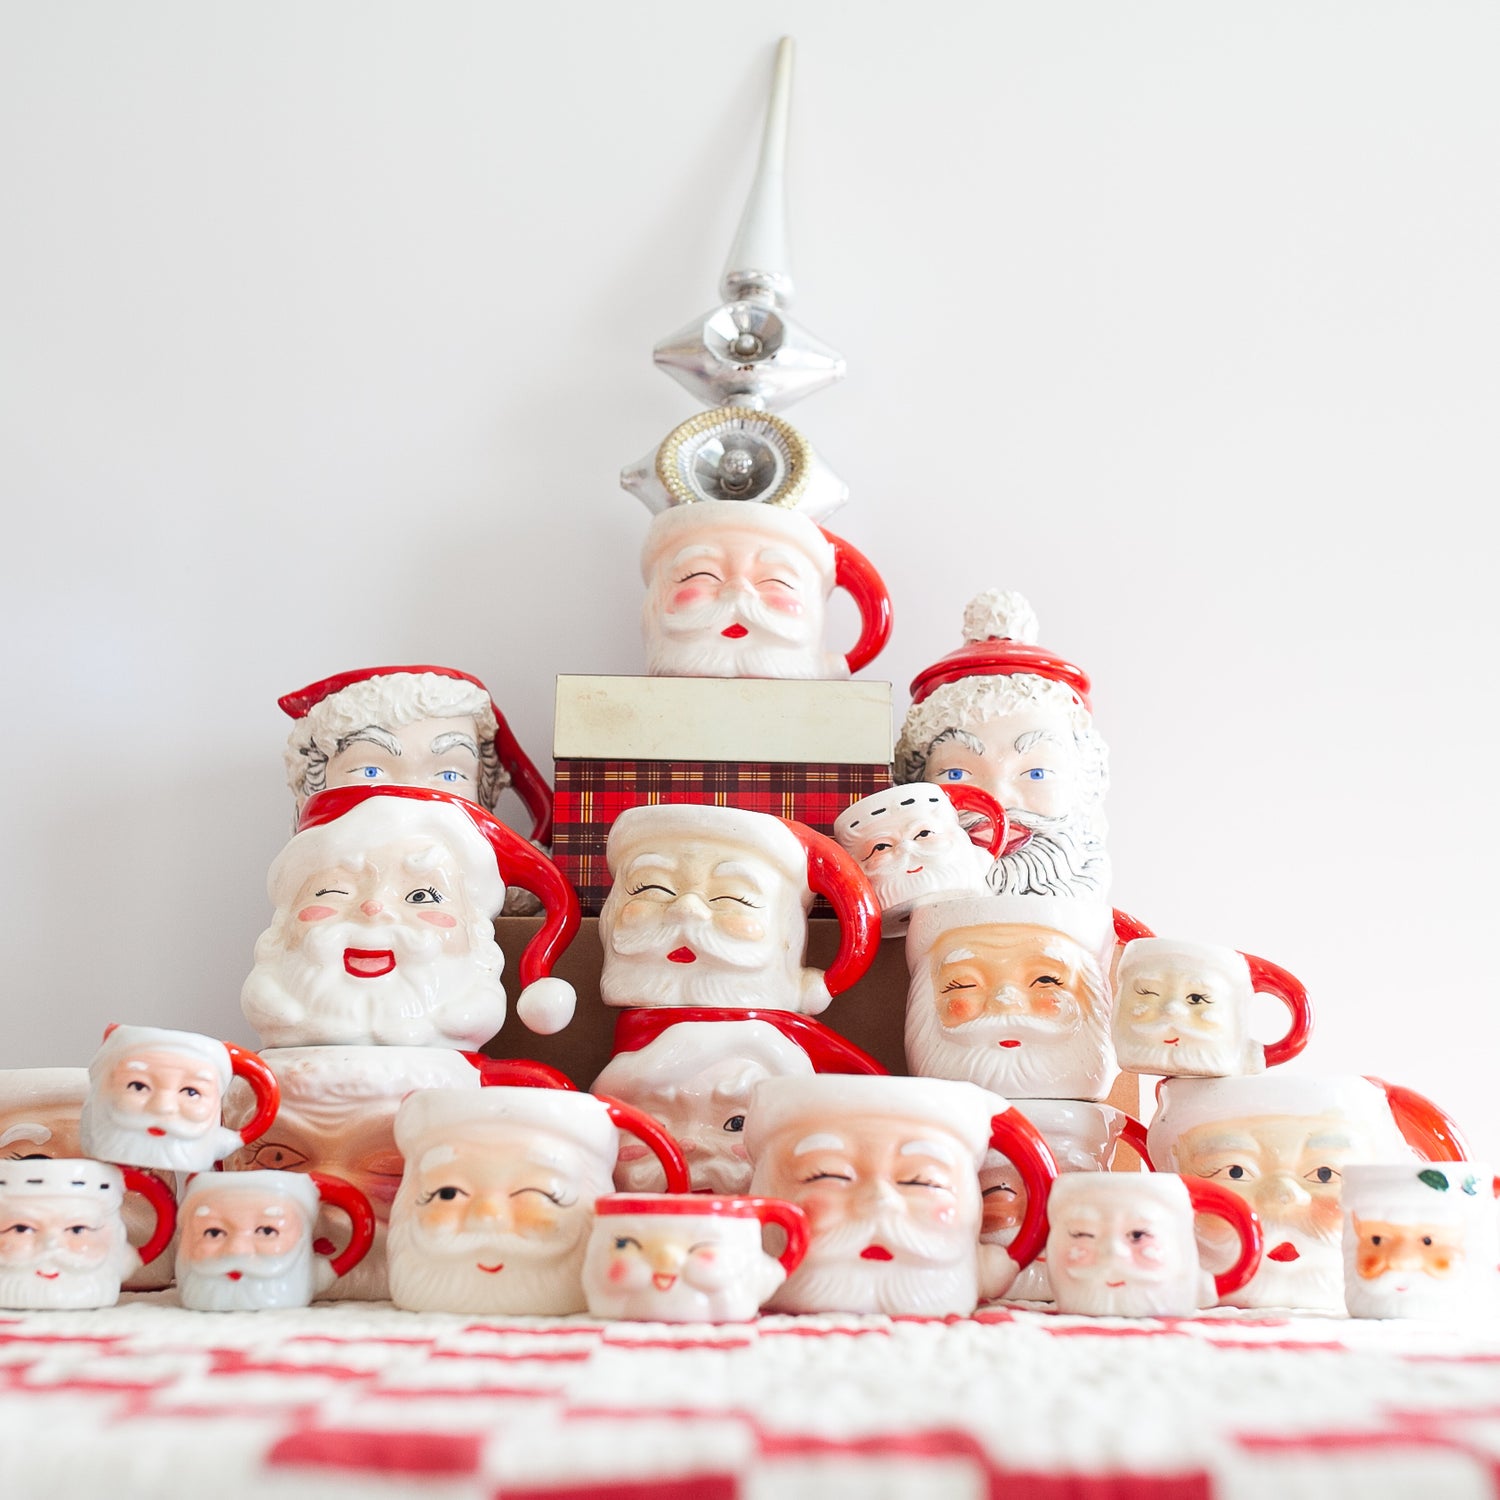 Holiday Season, Santas, Ornaments, Decor and More!